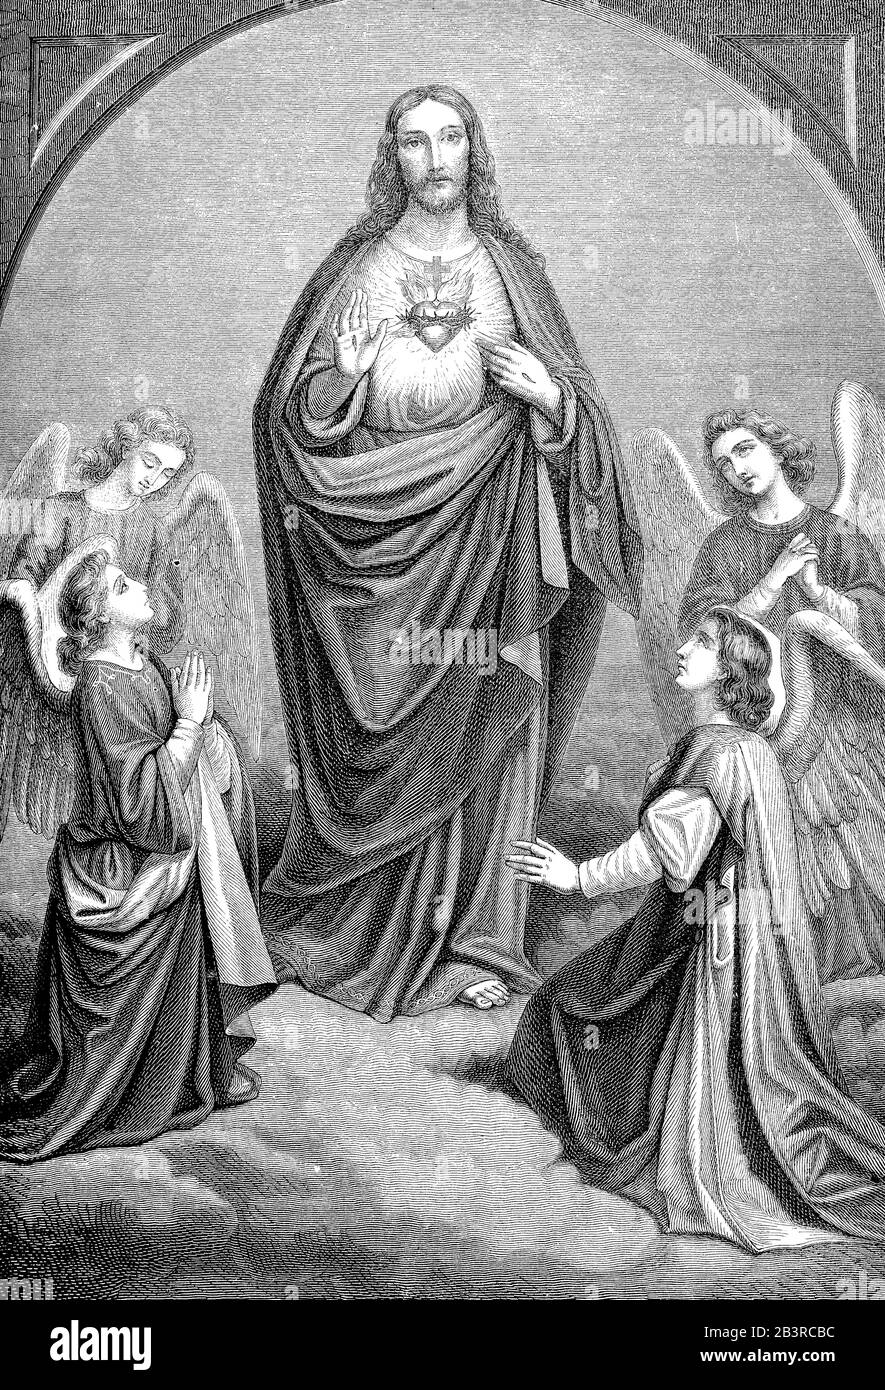 Jésus culte du coeur, peinture allégorique religieuse avec Christ montrant son coeur entouré d'anges priants Banque D'Images